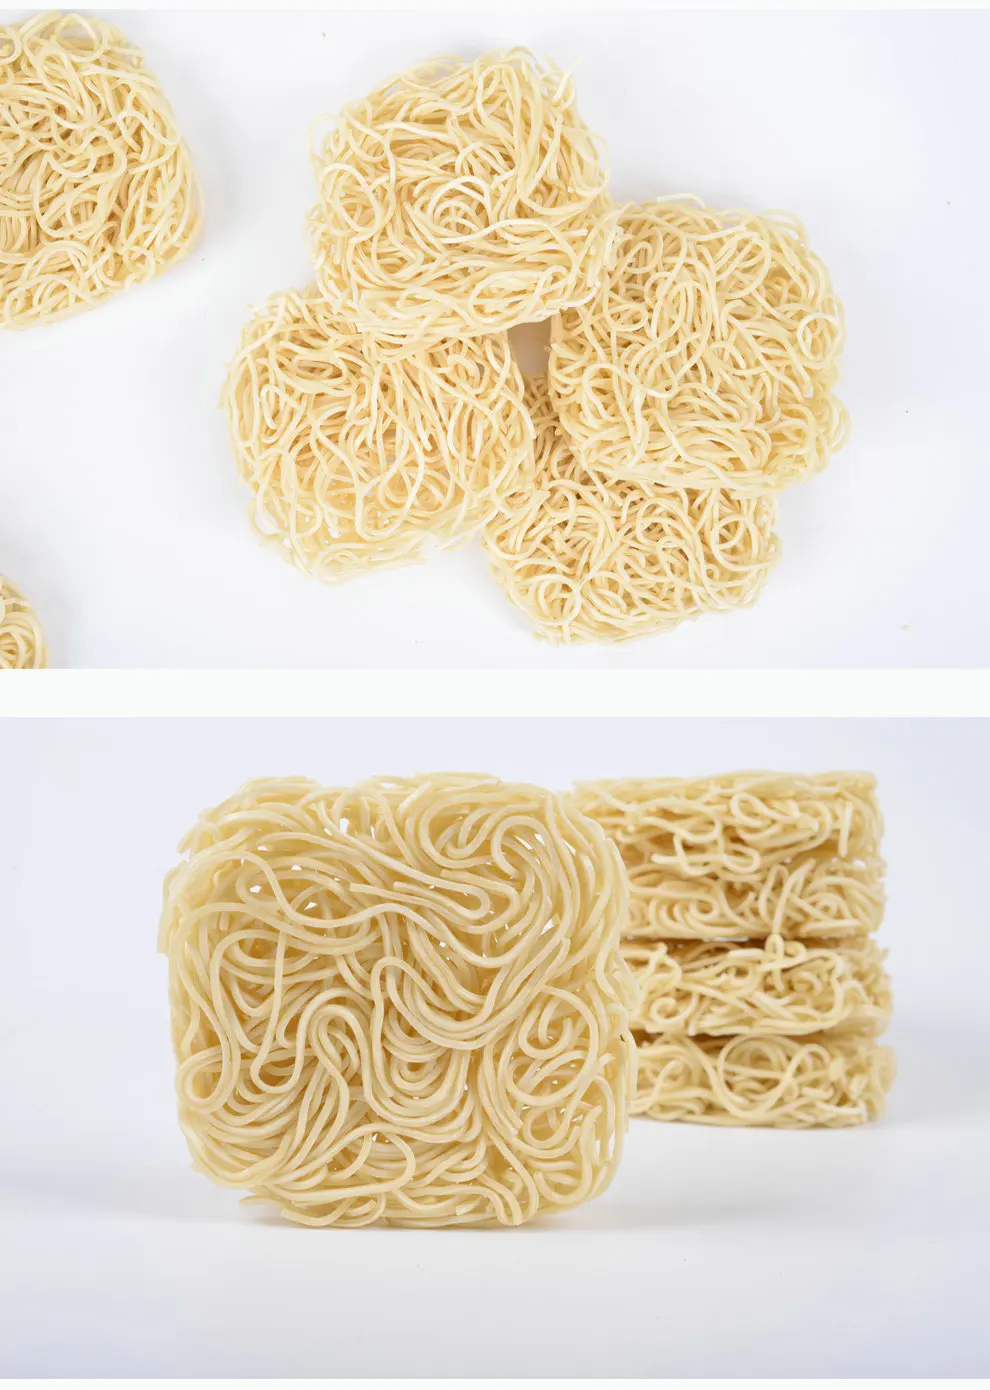 Продаю лапшу. Fast Noodles buy. Китайская пшеничная лапша в продаже. Noodles name.